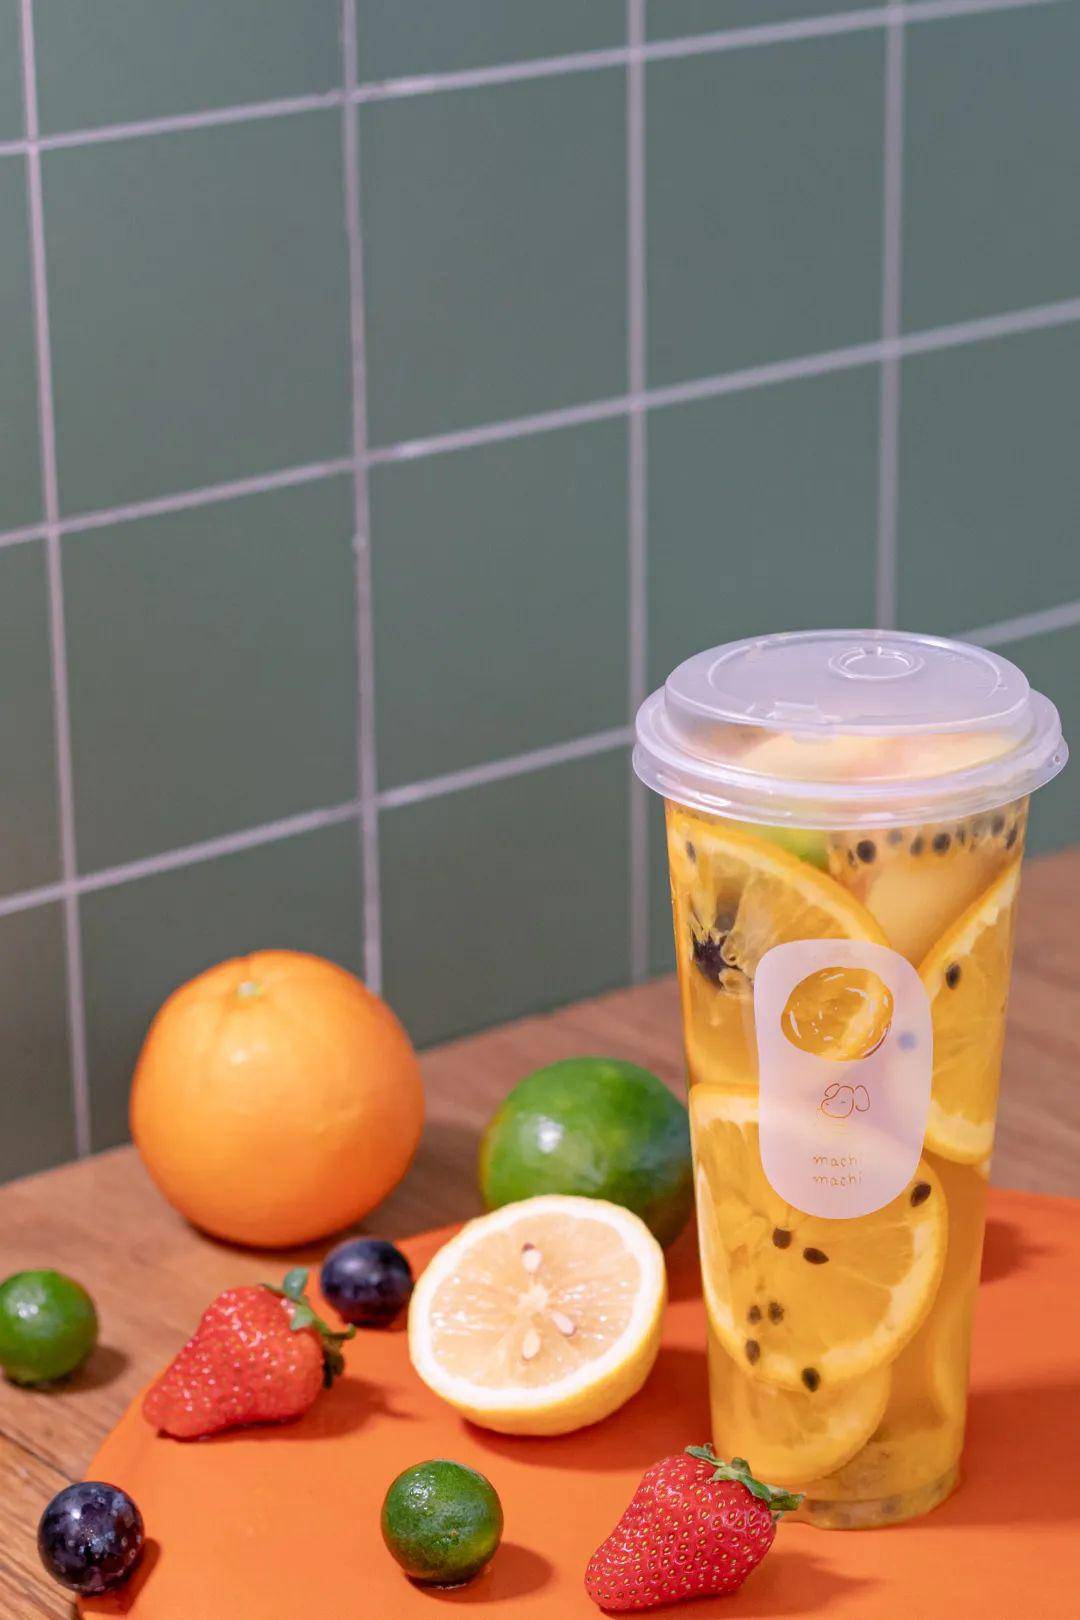 奶茶,麥吉 machi machi这次也上新了夏季新品:多达8种水果的水果或者